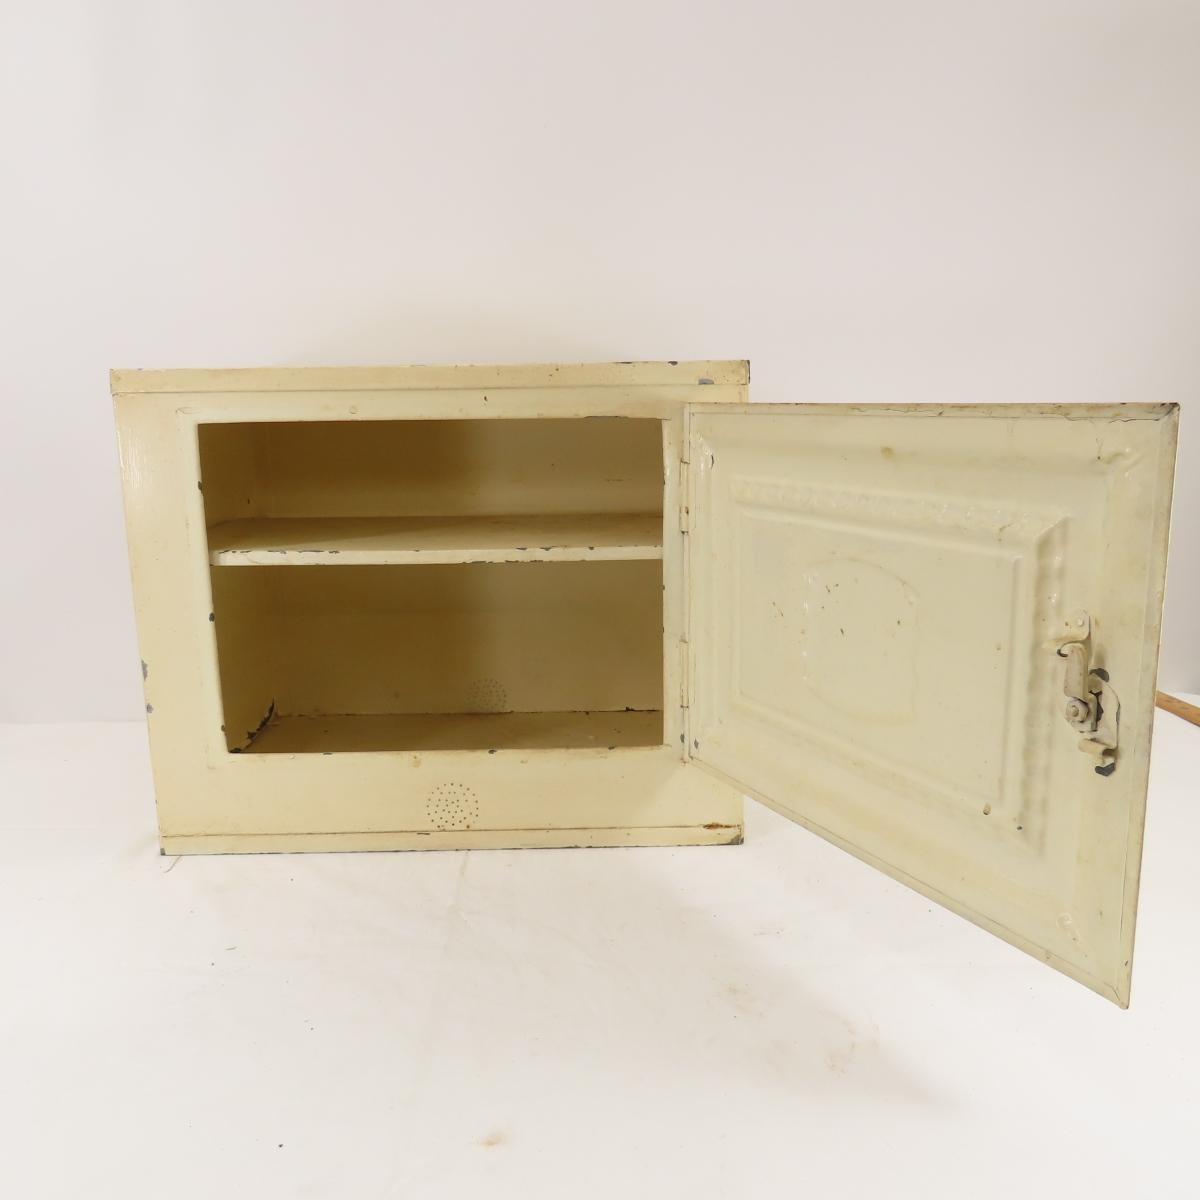 Vintage Tin Kitchen Cabinet with Utensils